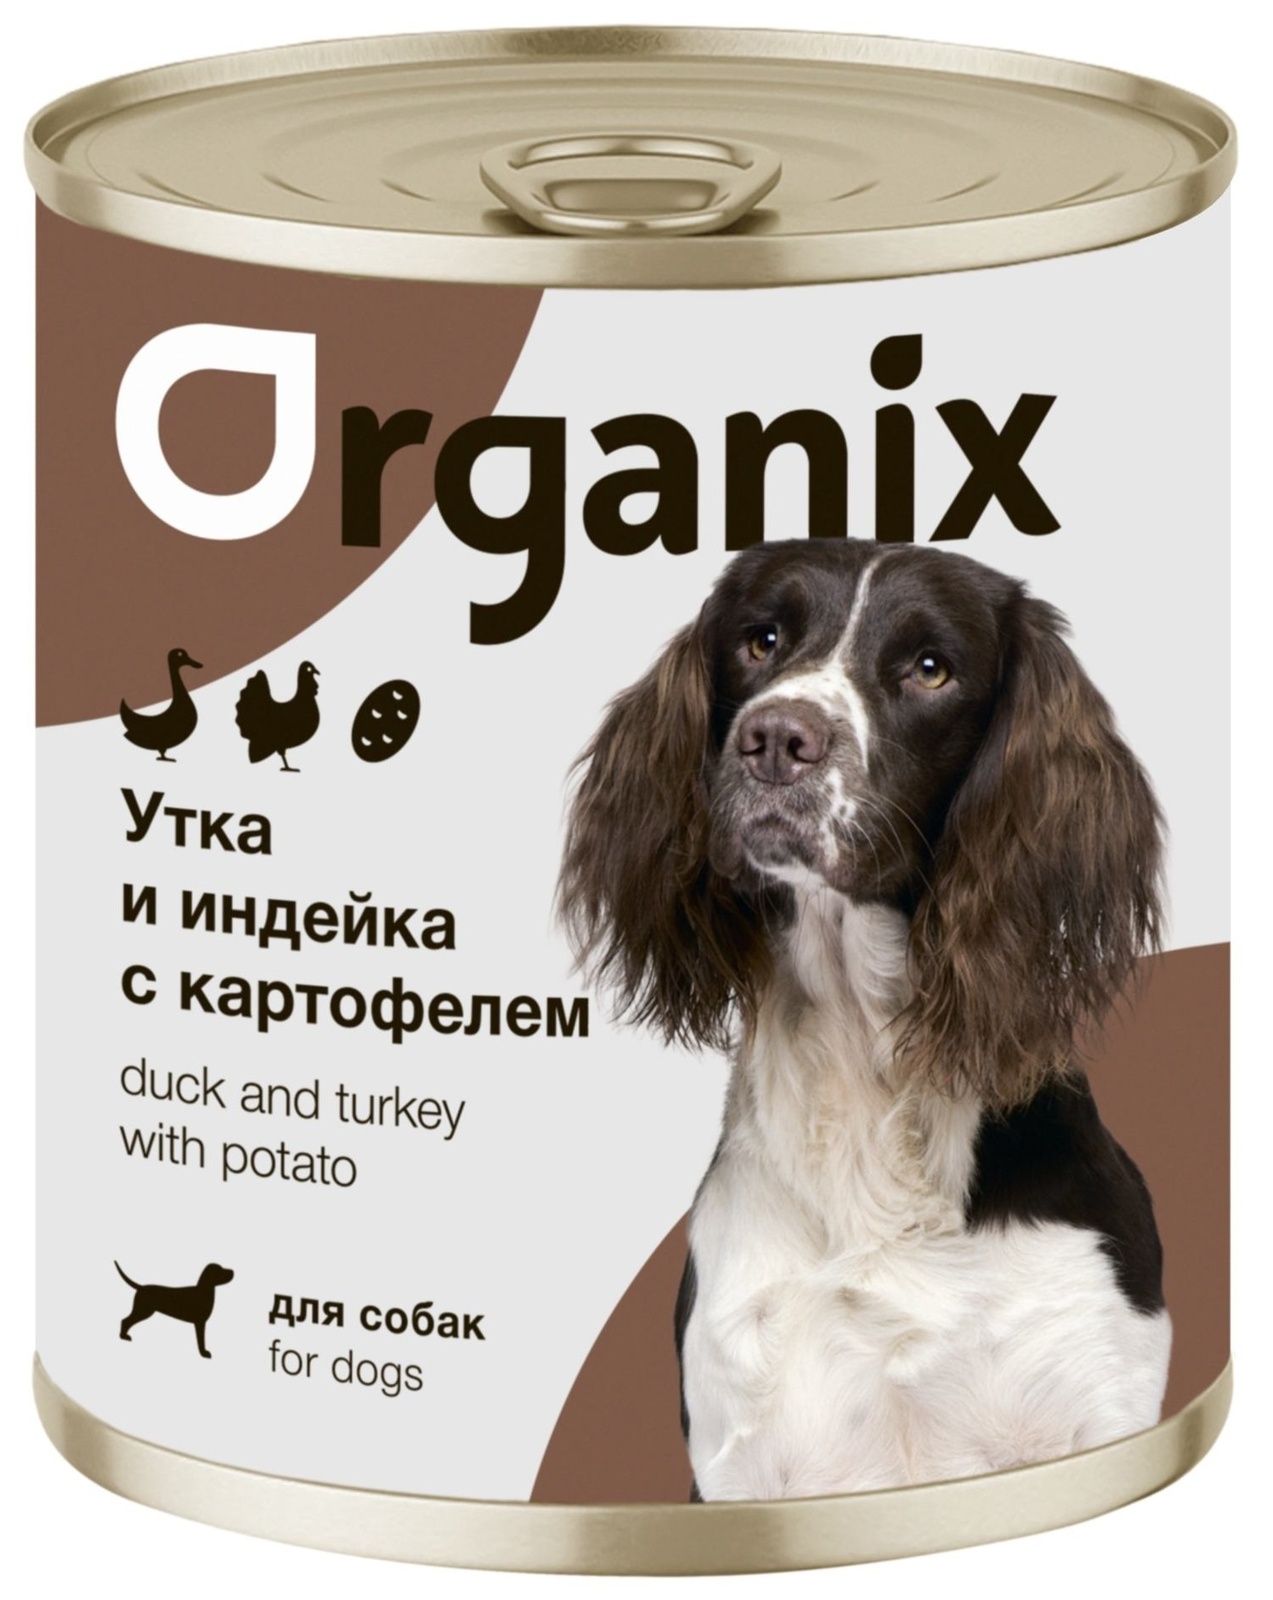 Organix консервы Organix консервы для собак Утка, индейка, картофель (400 г)